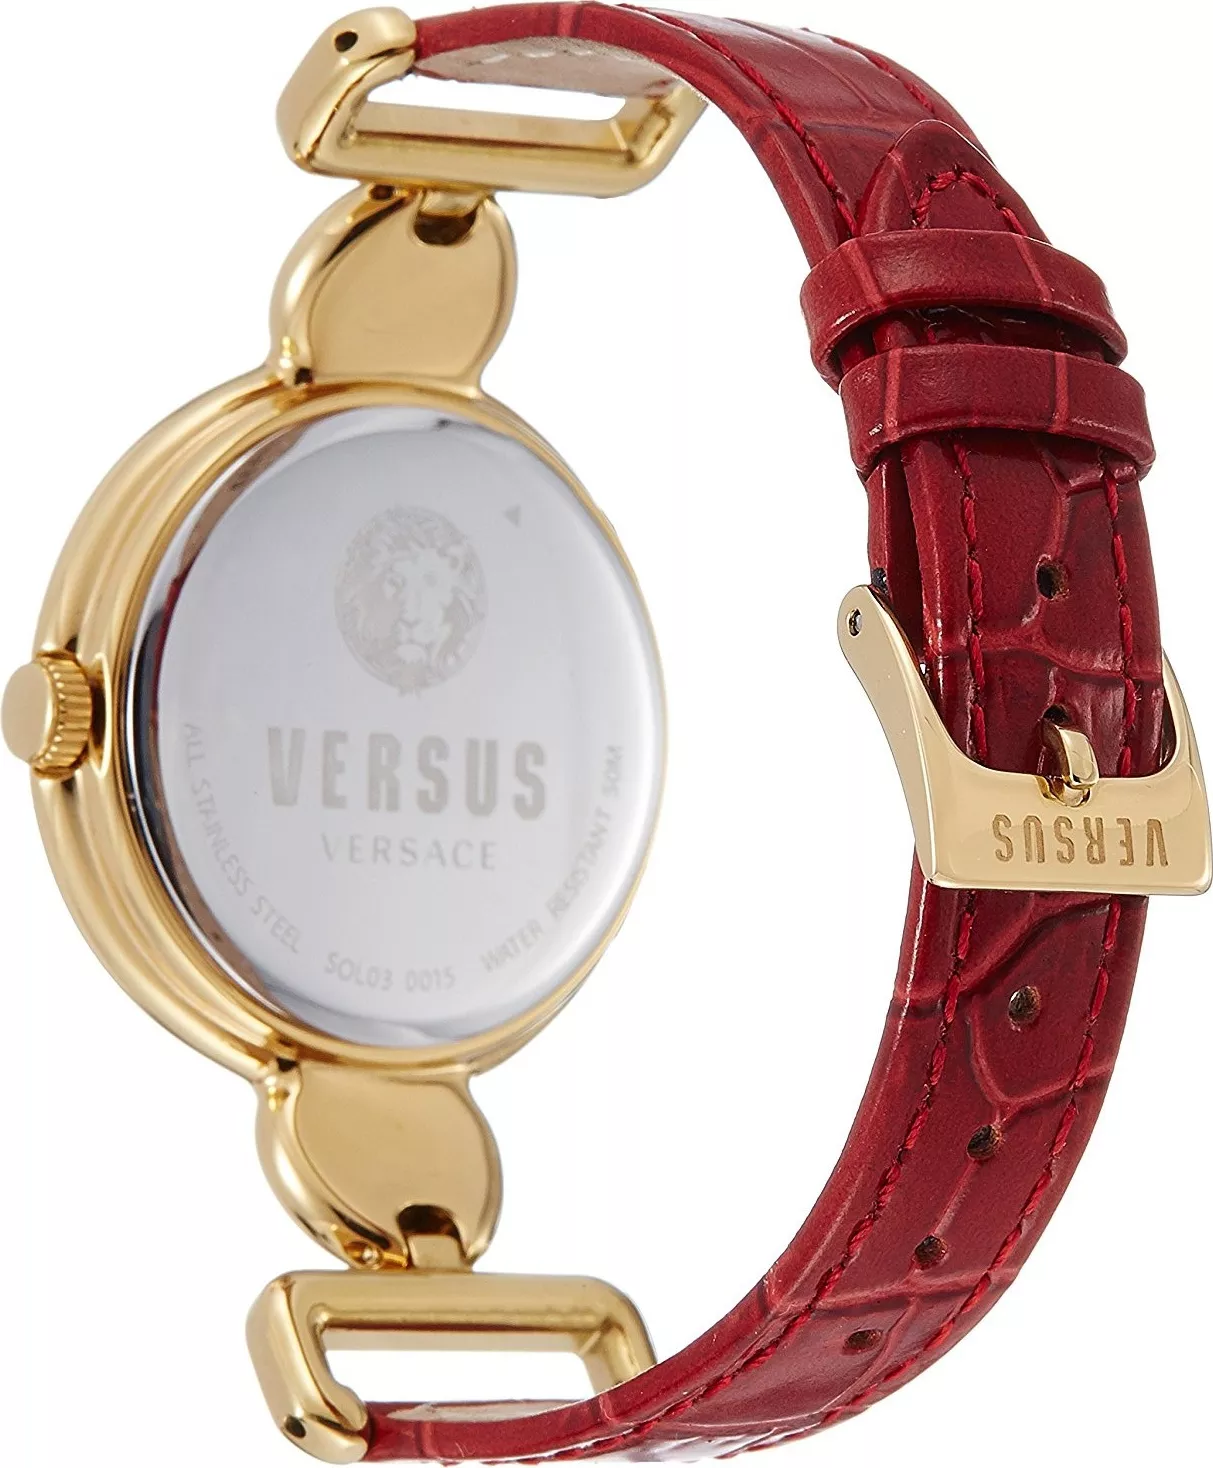 Versus by Versace Women's Sunnyridge Watch 34mm